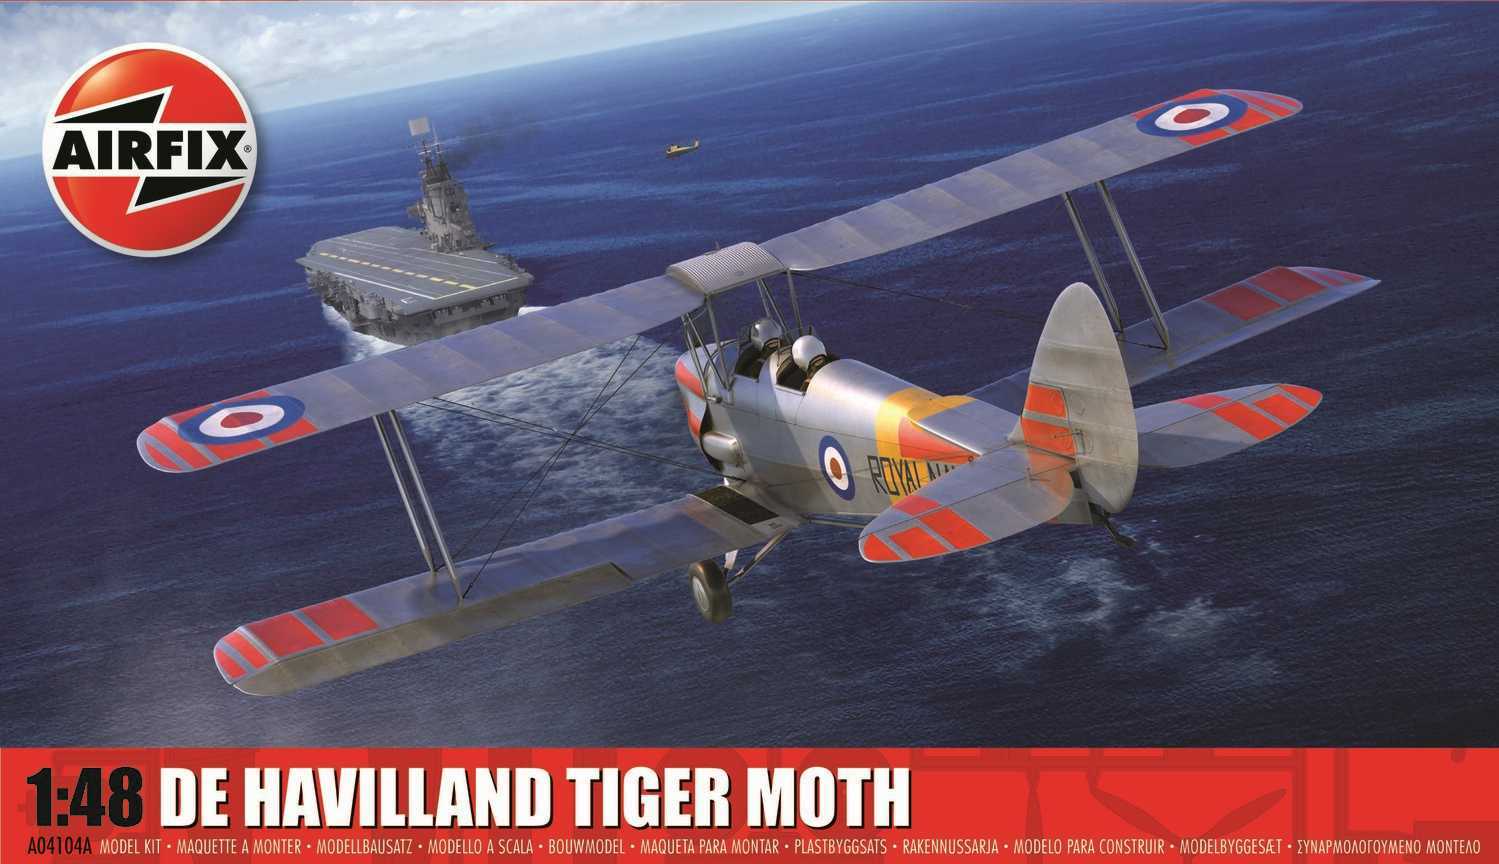 Classic Kit letadlo A04104A - De Havilland Tiger Moth (1:48)